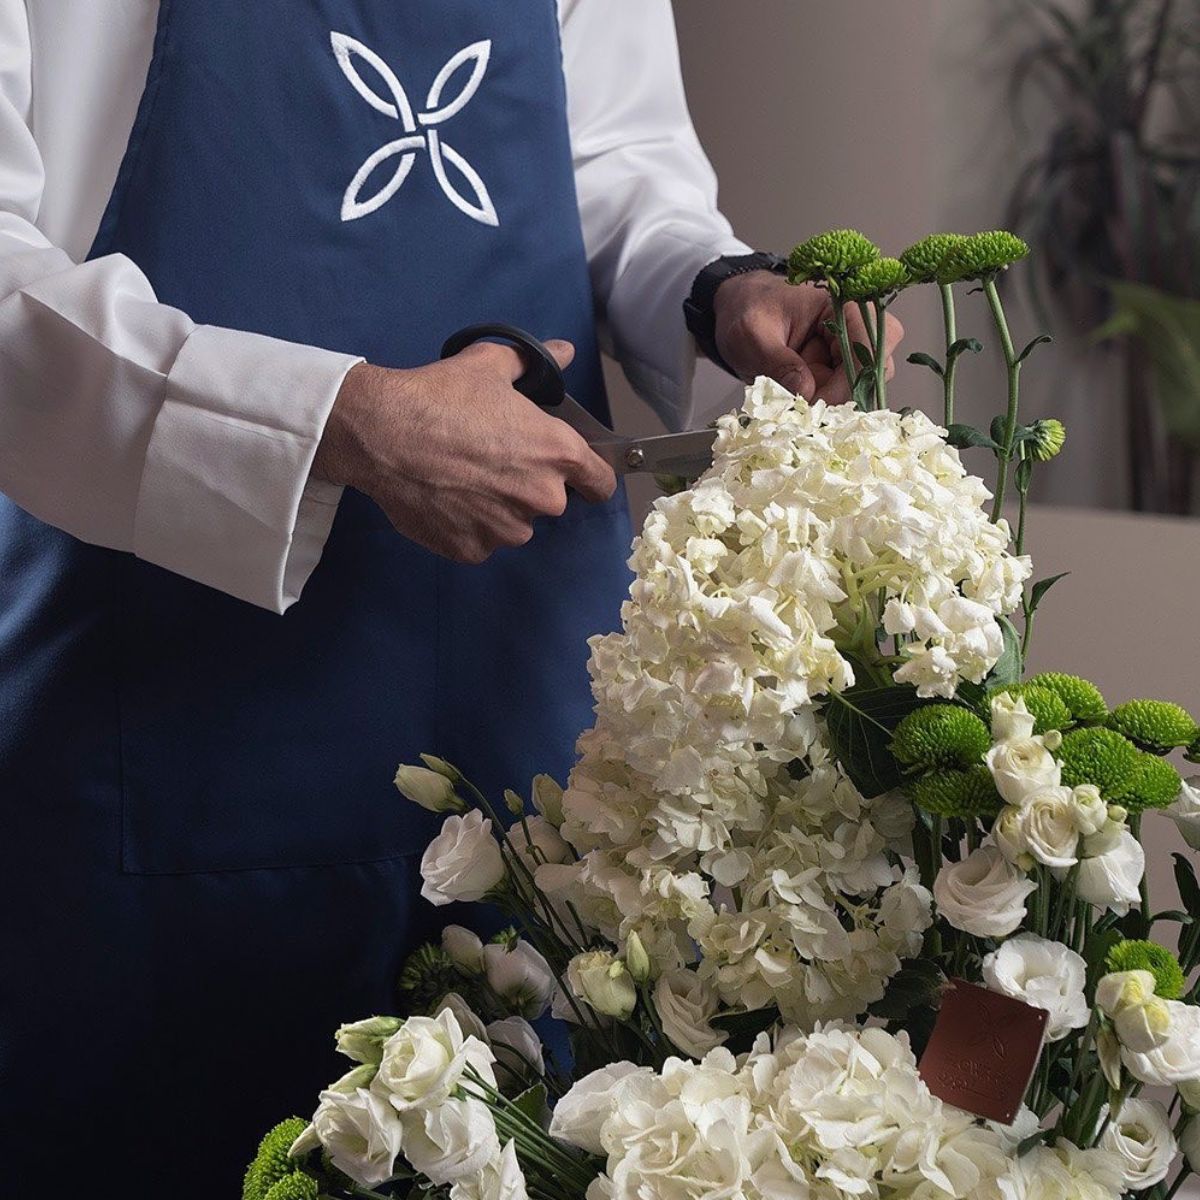 Floward is a flower business in the MENA region